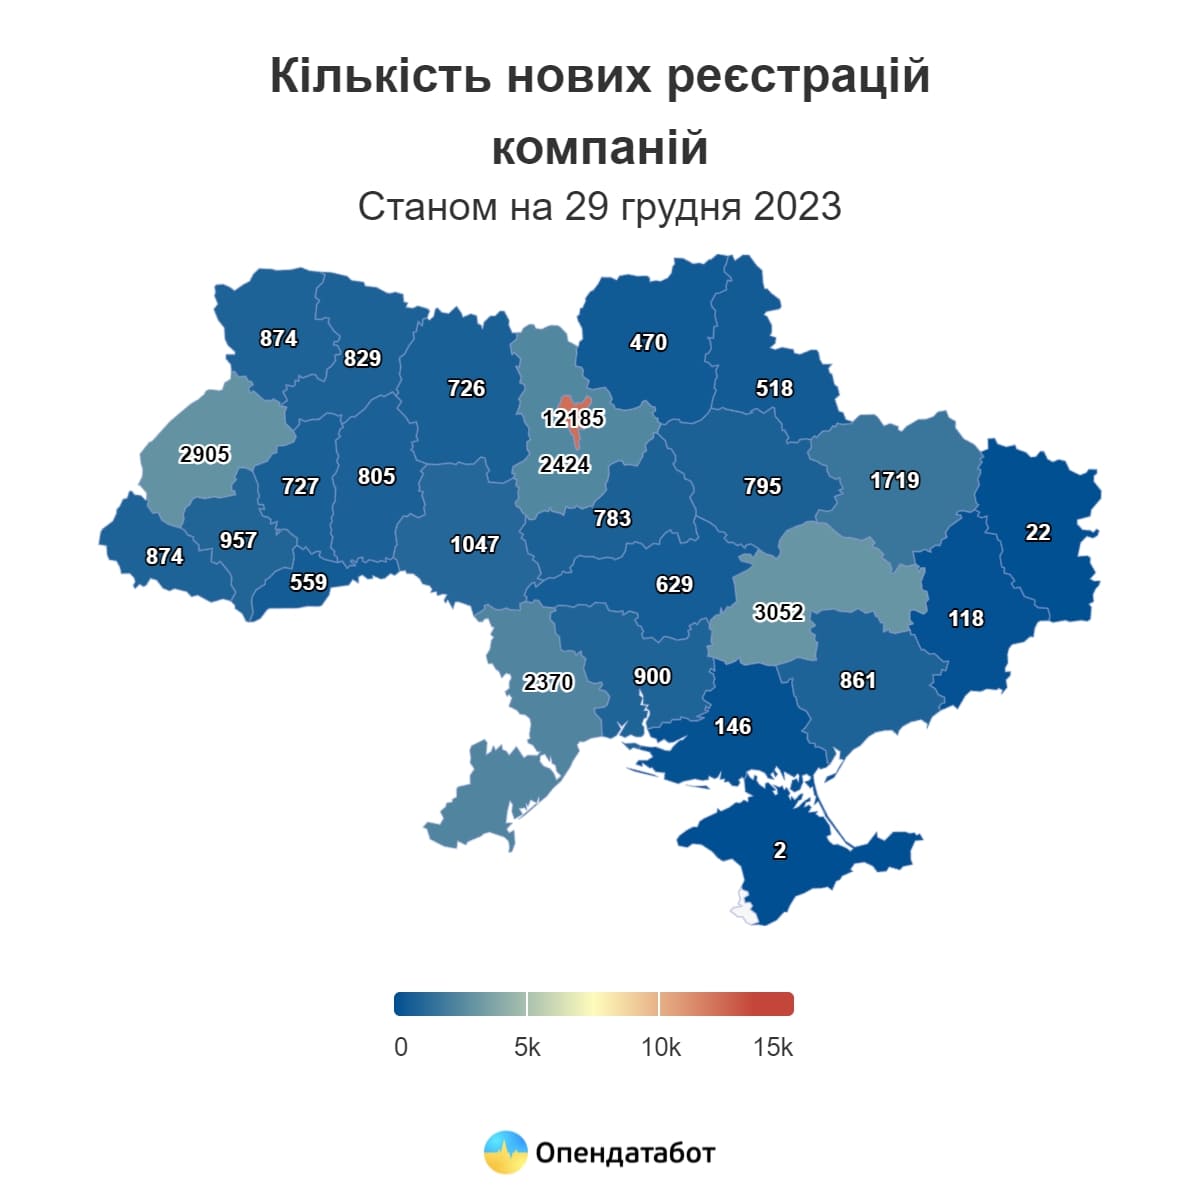 У 2023 році в Україні зареєстрували 304 048 тисячі нових ФОПів та 37 297 тисяч нових компаній